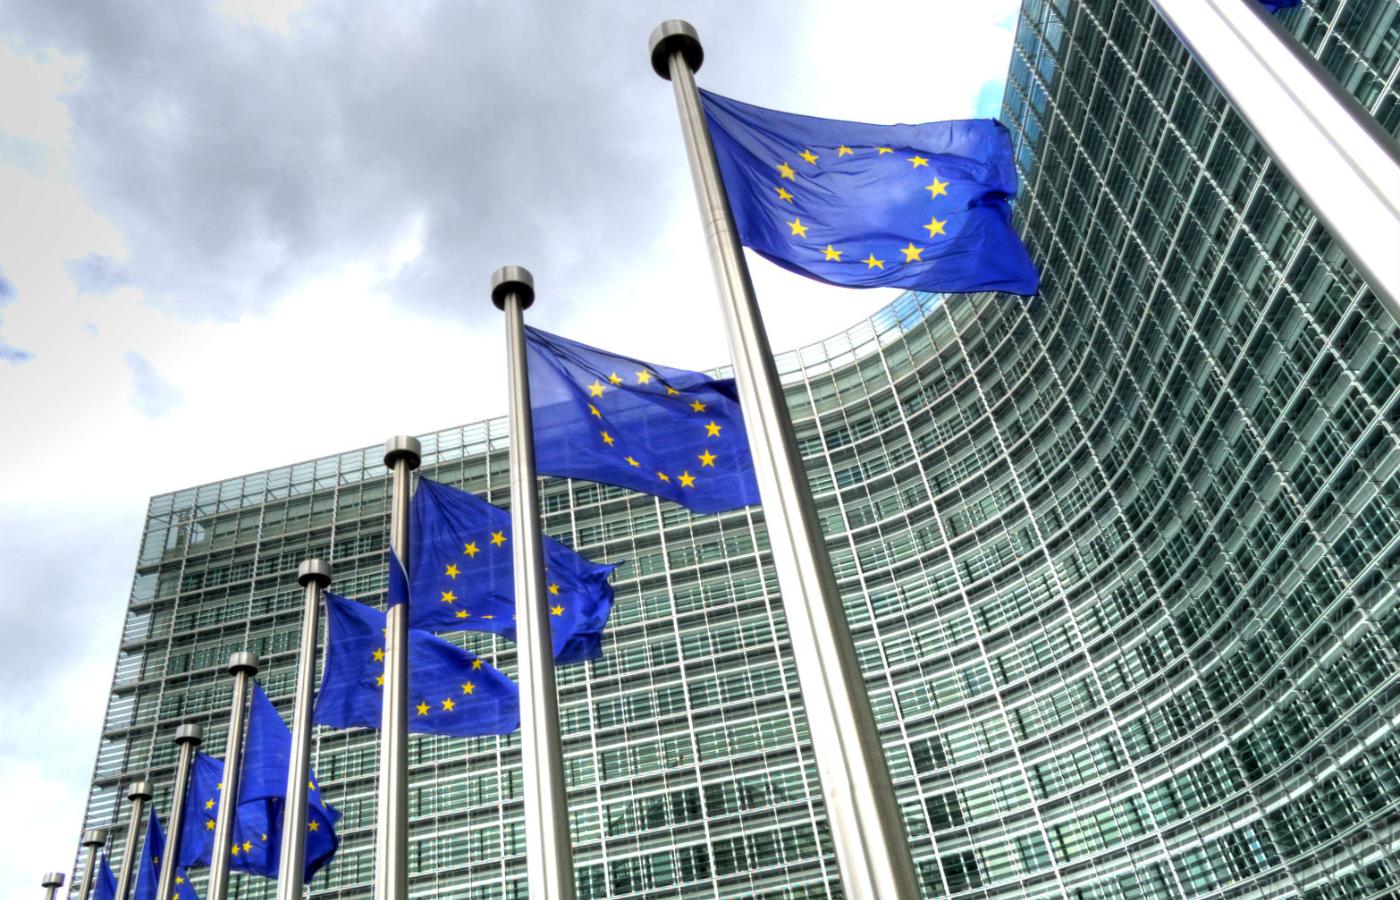 Komisja Europejska rozpoczęła procedurę zmierzającą do zaskarżenia do Trybunału Sprawiedliwości UE przepisów dyscyplinarnych dotyczących sędziów.